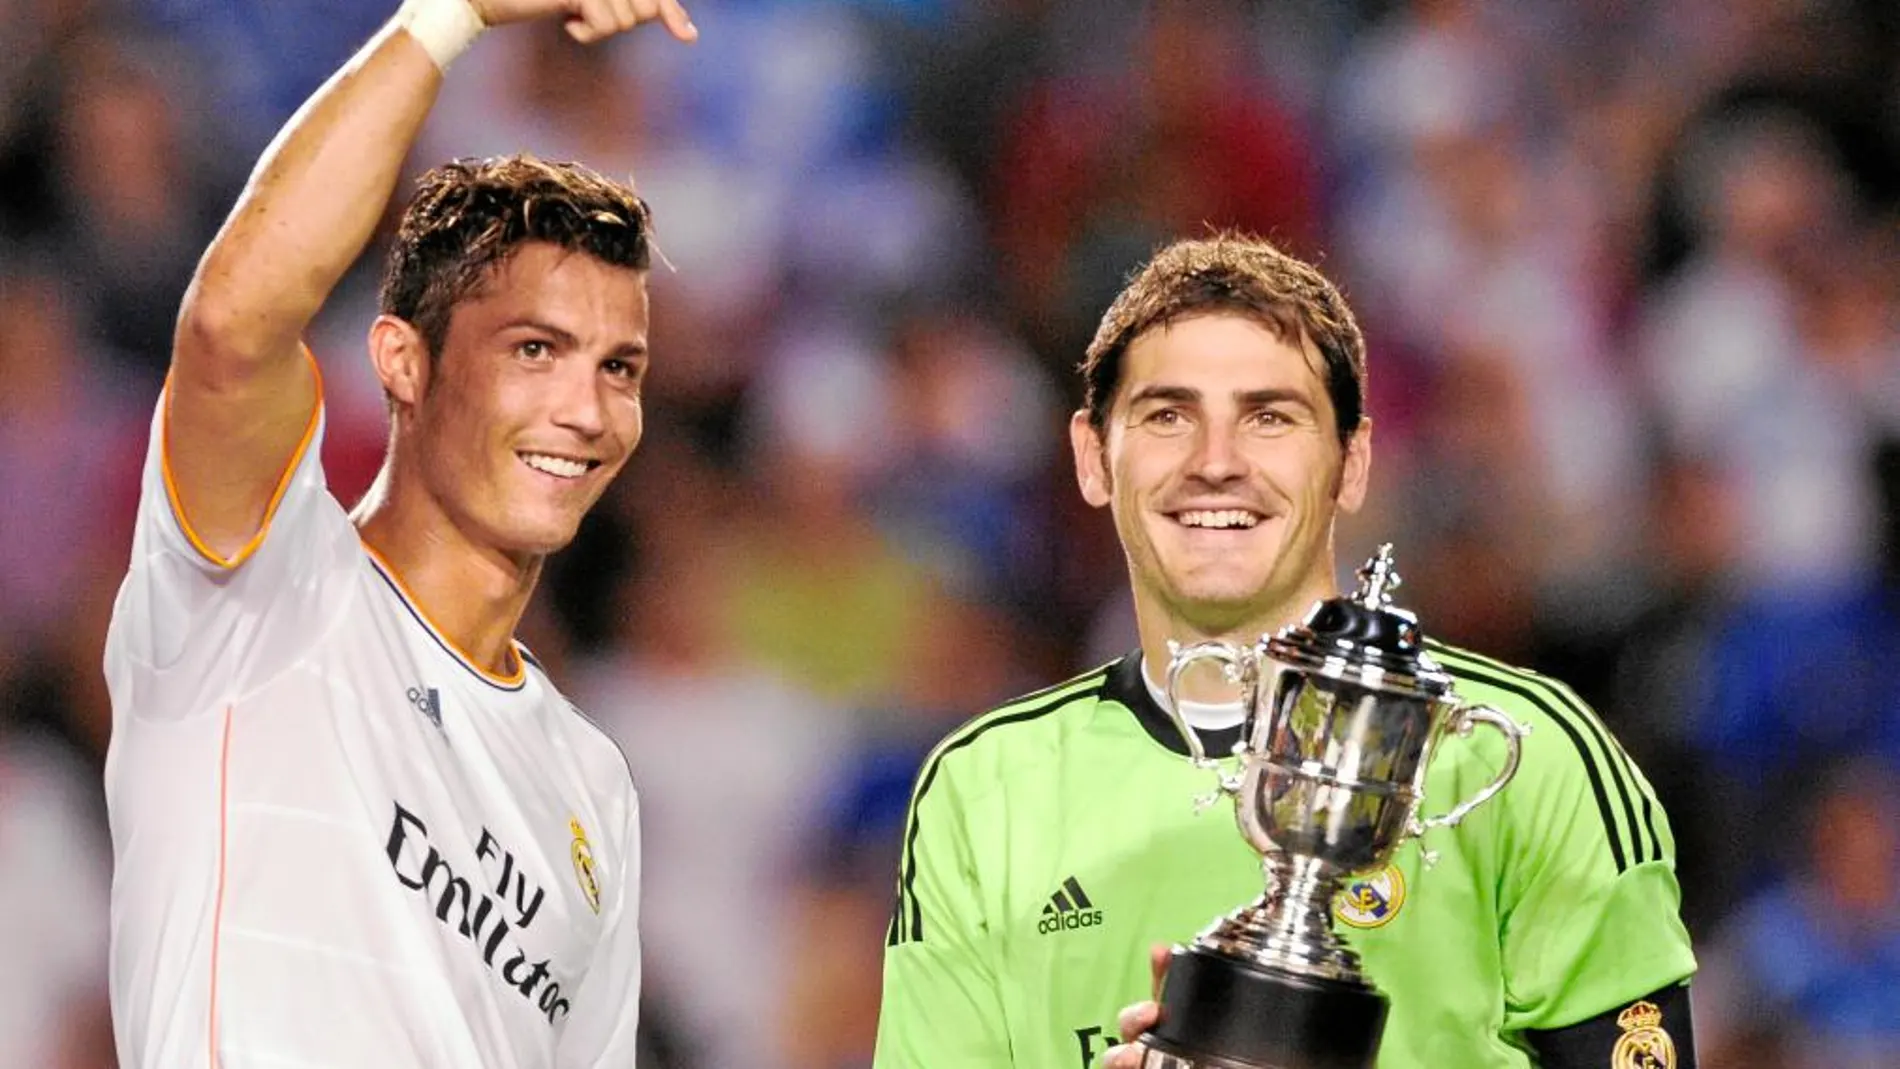 Cristiano señala a Casillas, con el trofeo de mejor jugador del partido. Lo había ganado el portugués, pero se lo cedió al capitán en reconocimiento por su partido